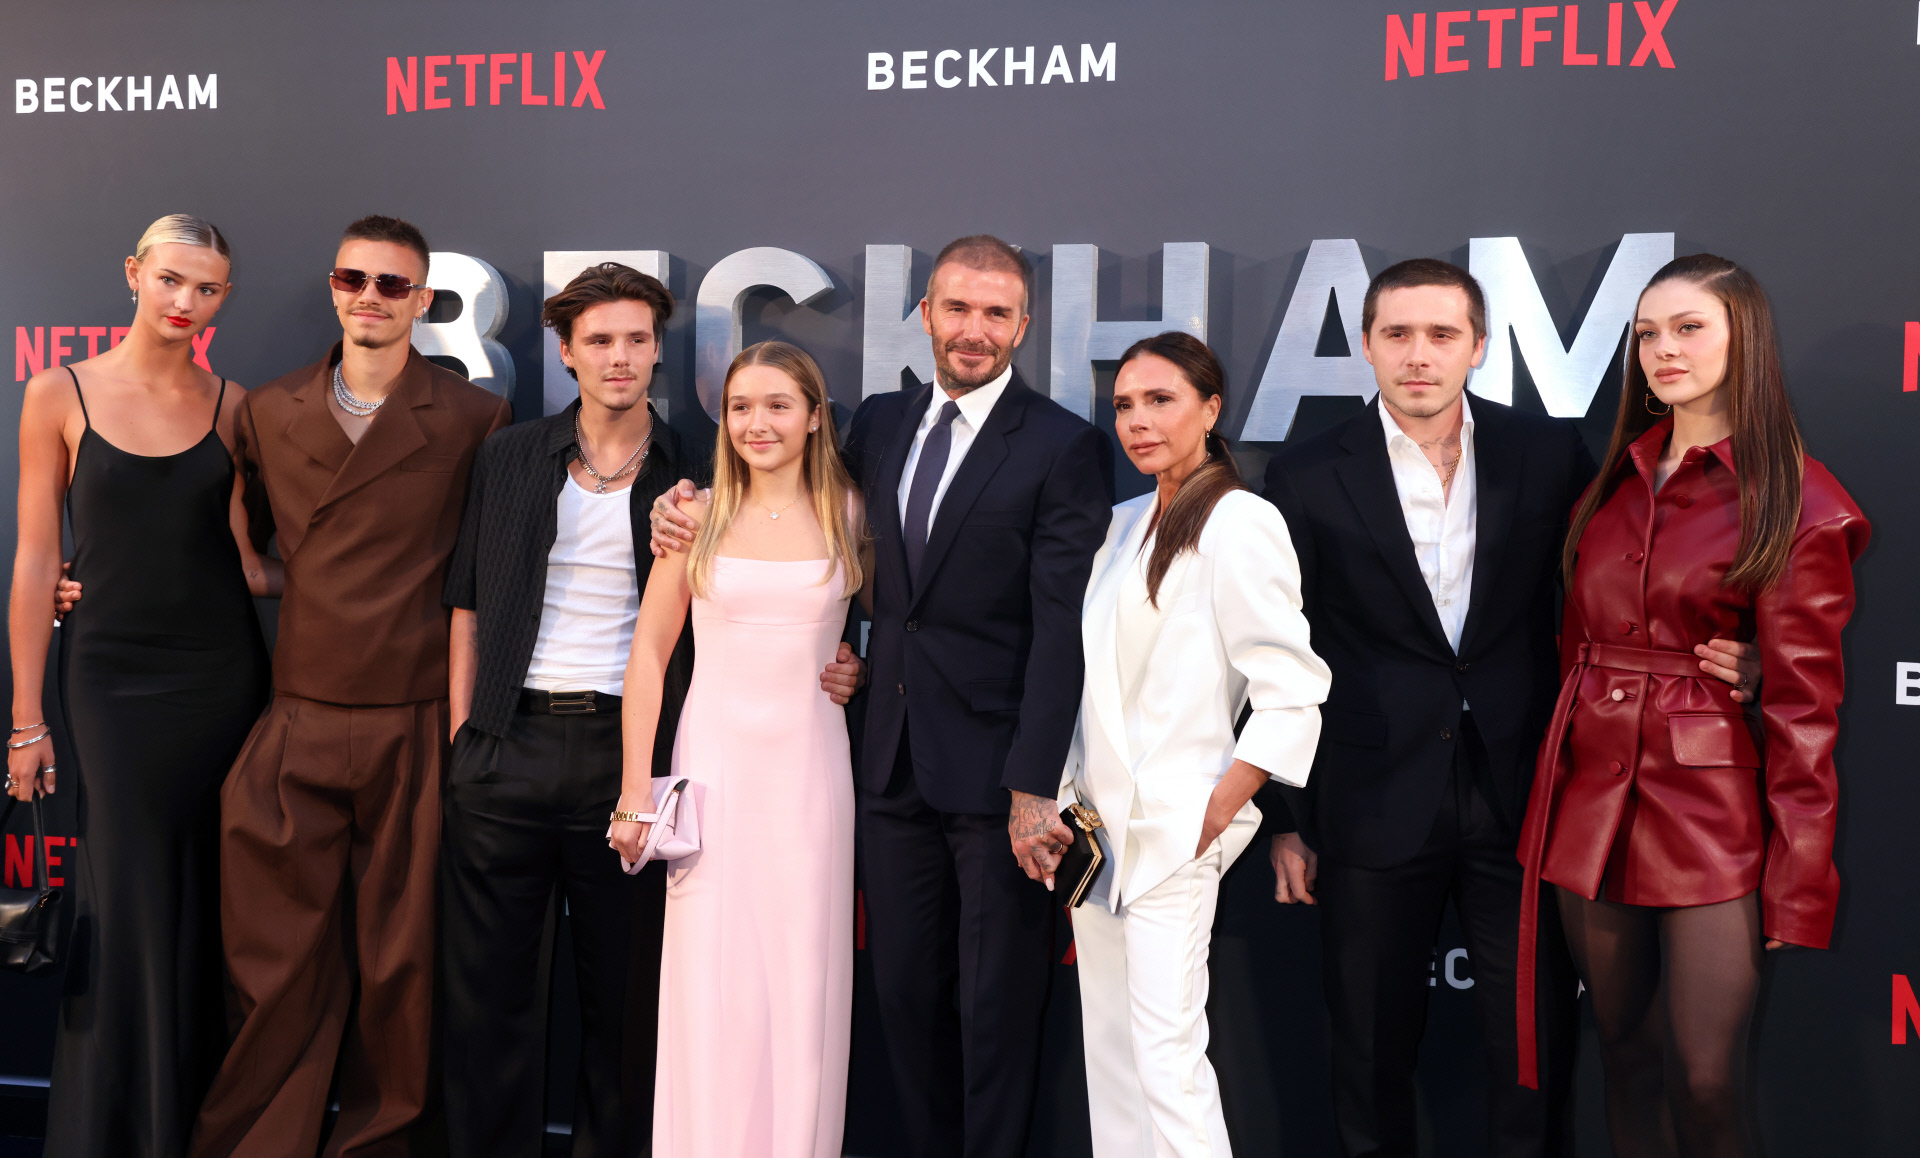 Beckham con su familia al completo, las parejas de sus dos hijos mayores incluidas, durante la presentación del documental en Londres.